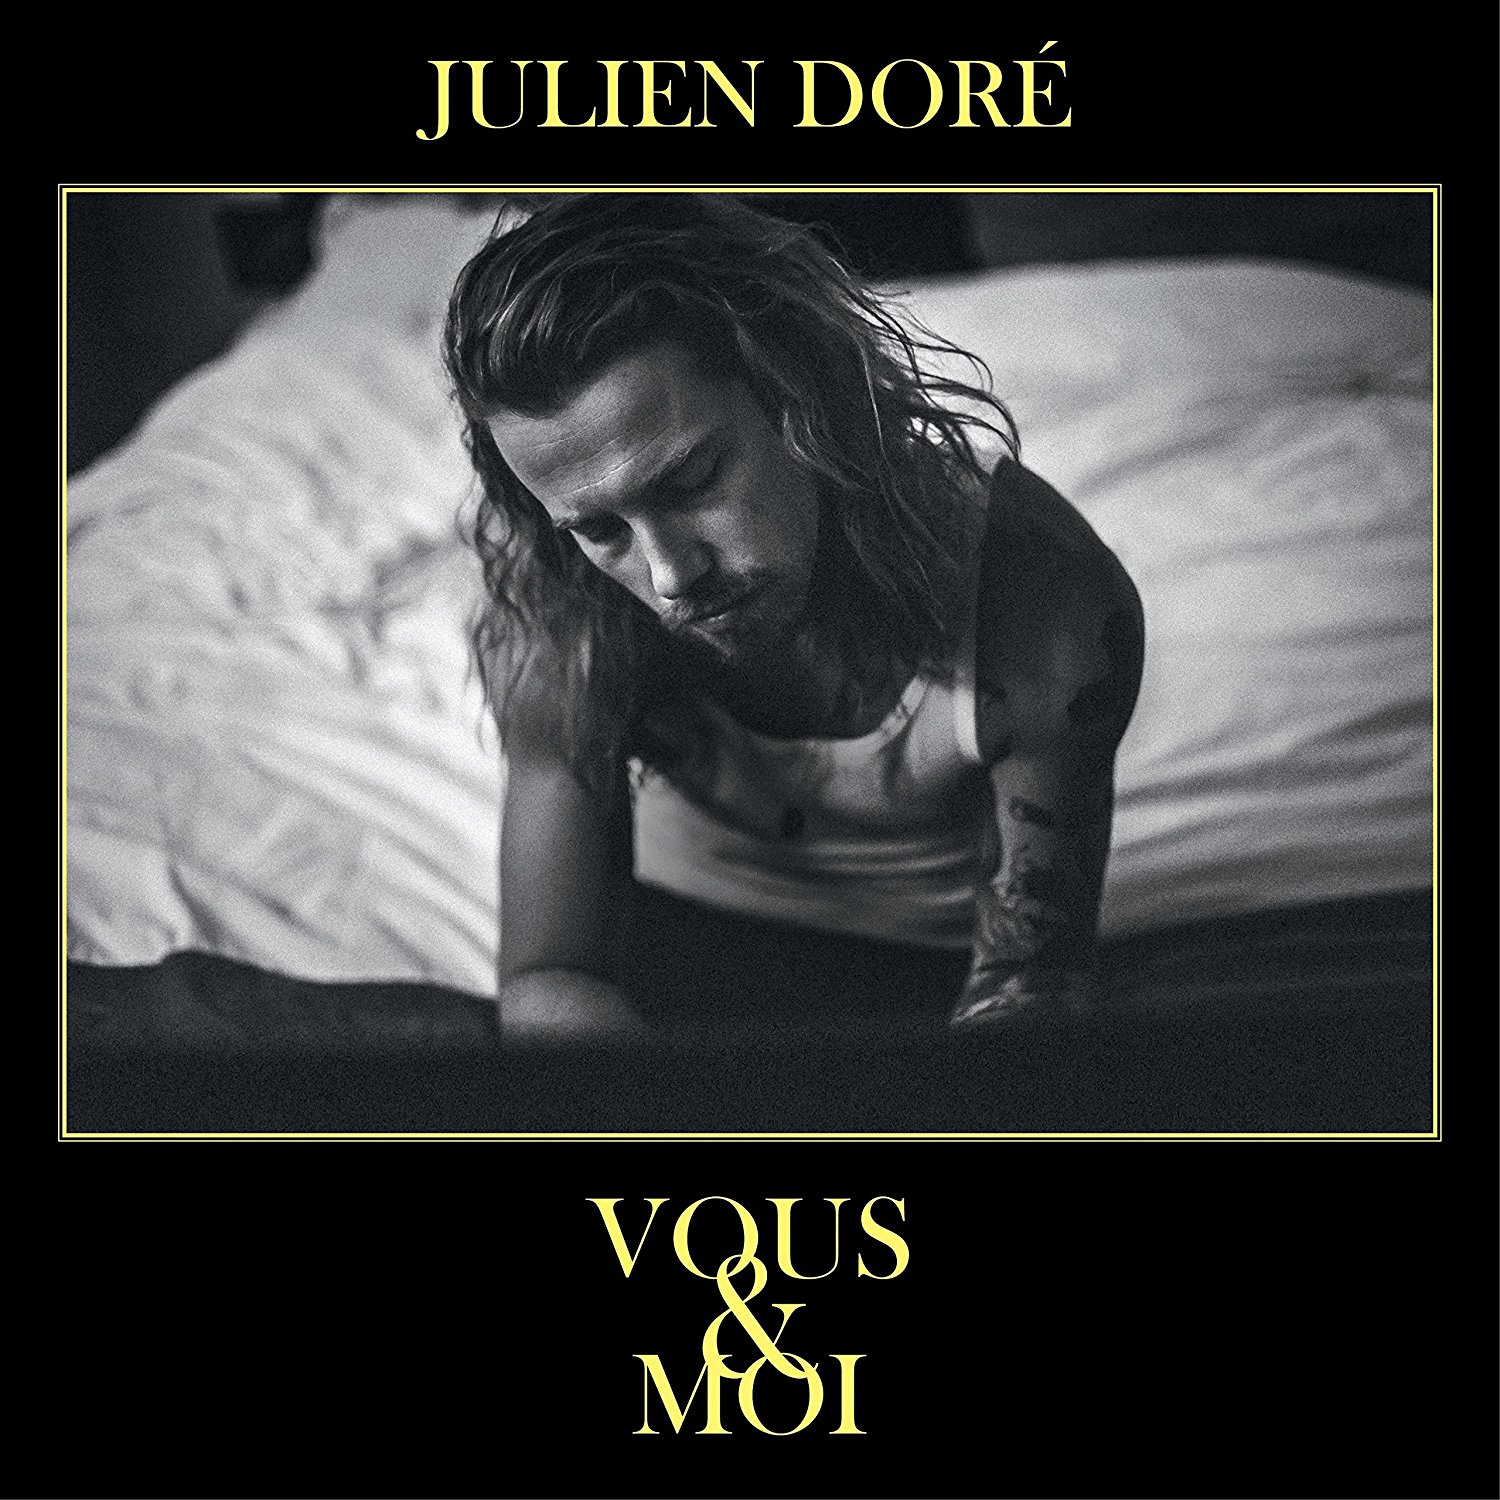 Julien Dore - Vous & Moi (pochette jaune ou noire, envoi au hasard), CD pas cher Amazon